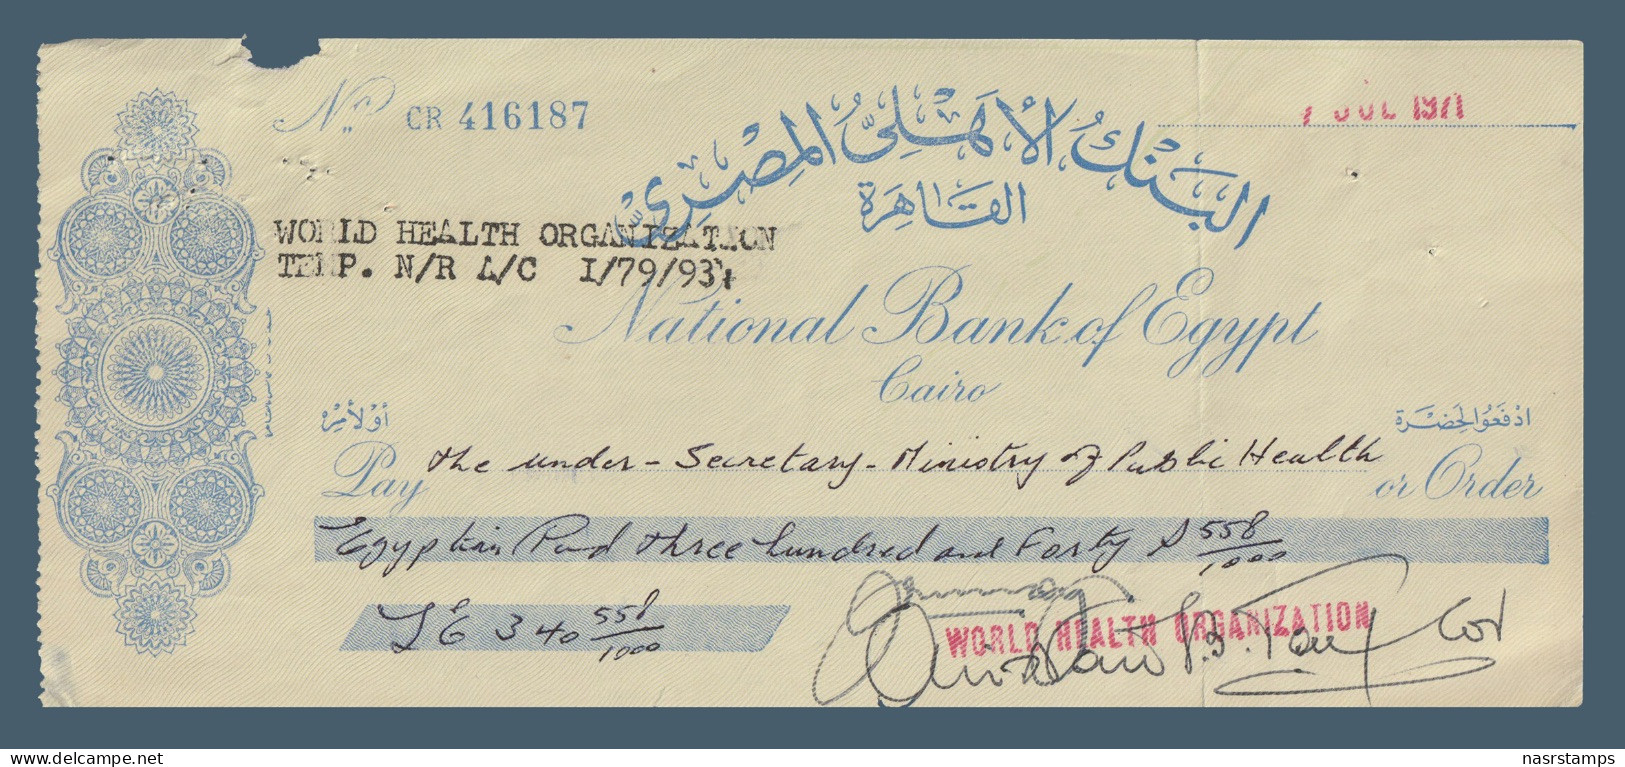 Egypt - 1971 - Vintage Check - ( National Bank Of Egypt ) - Chèques & Chèques De Voyage